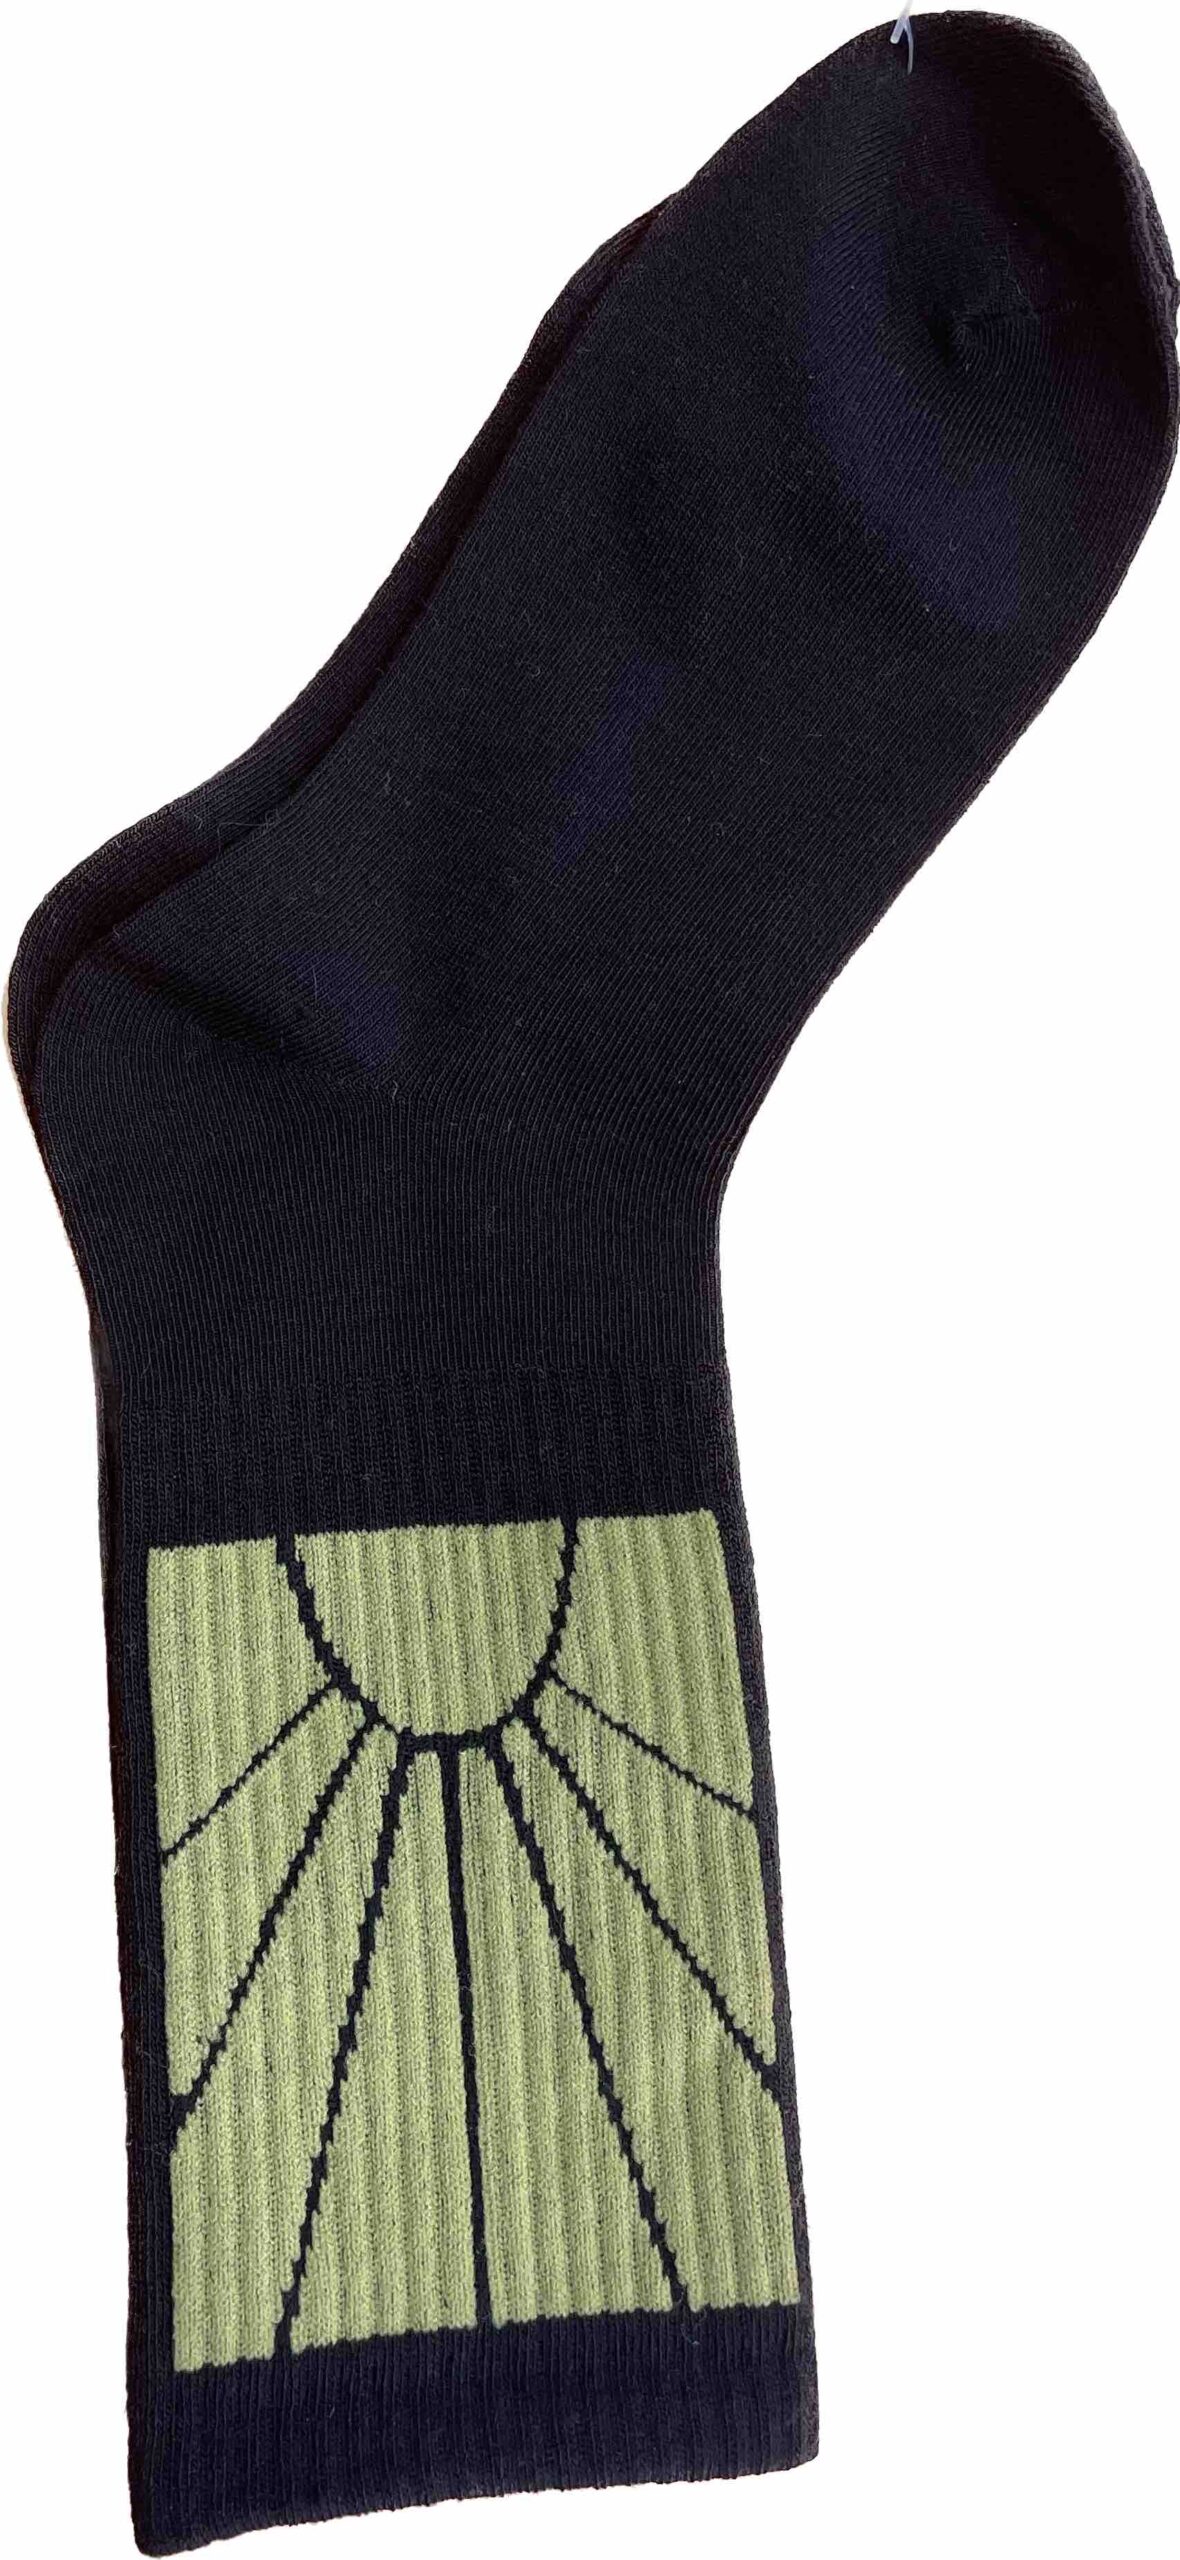 Κάλτσες σε χρώμα μαύρο 95 % βαμβάκι 5 % ελαστινη μέγεθος 40-46 no E1117